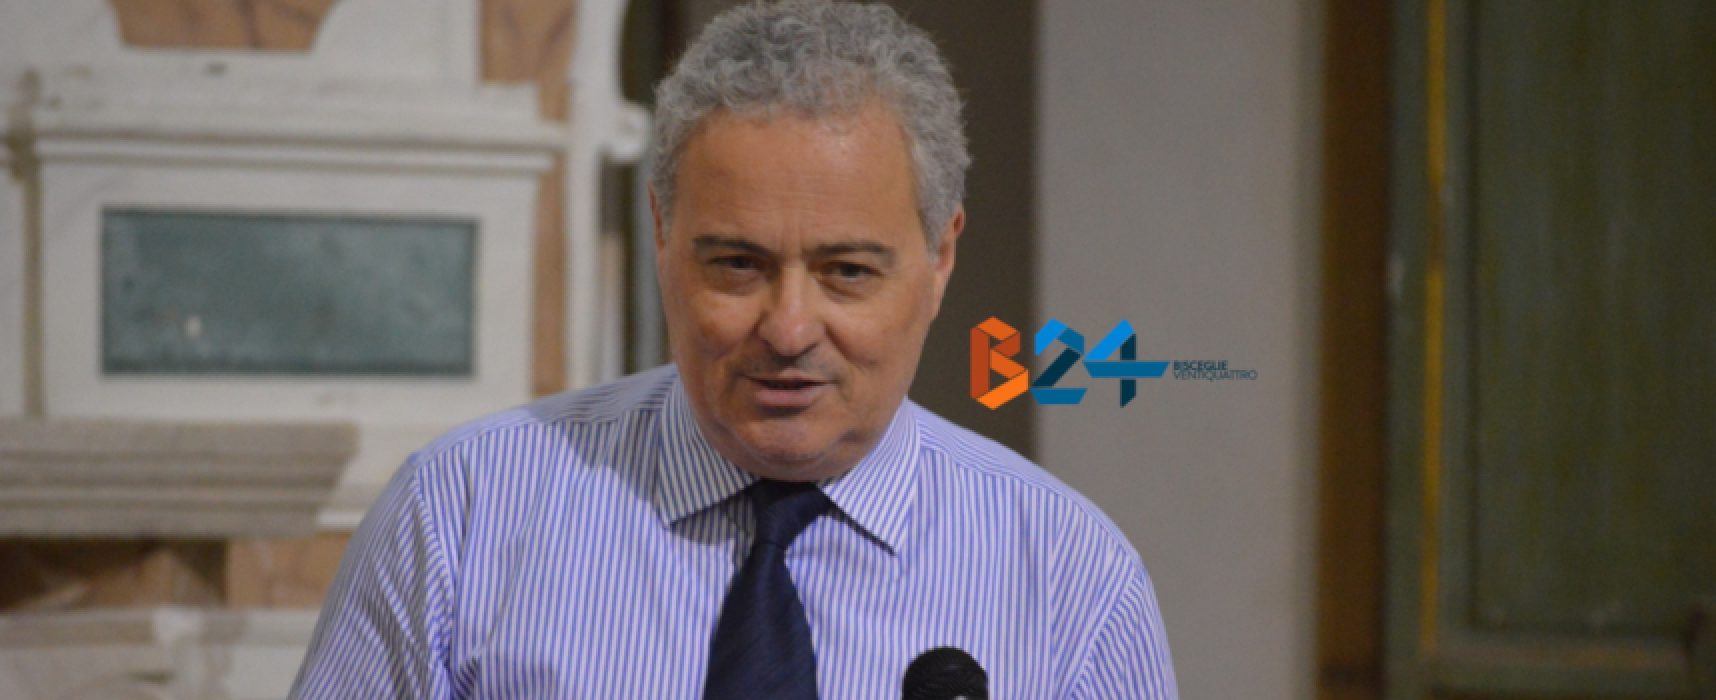 Amministrative, Napoletano: “Bisceglie ha bisogno di una persona che sappia fare il sindaco”